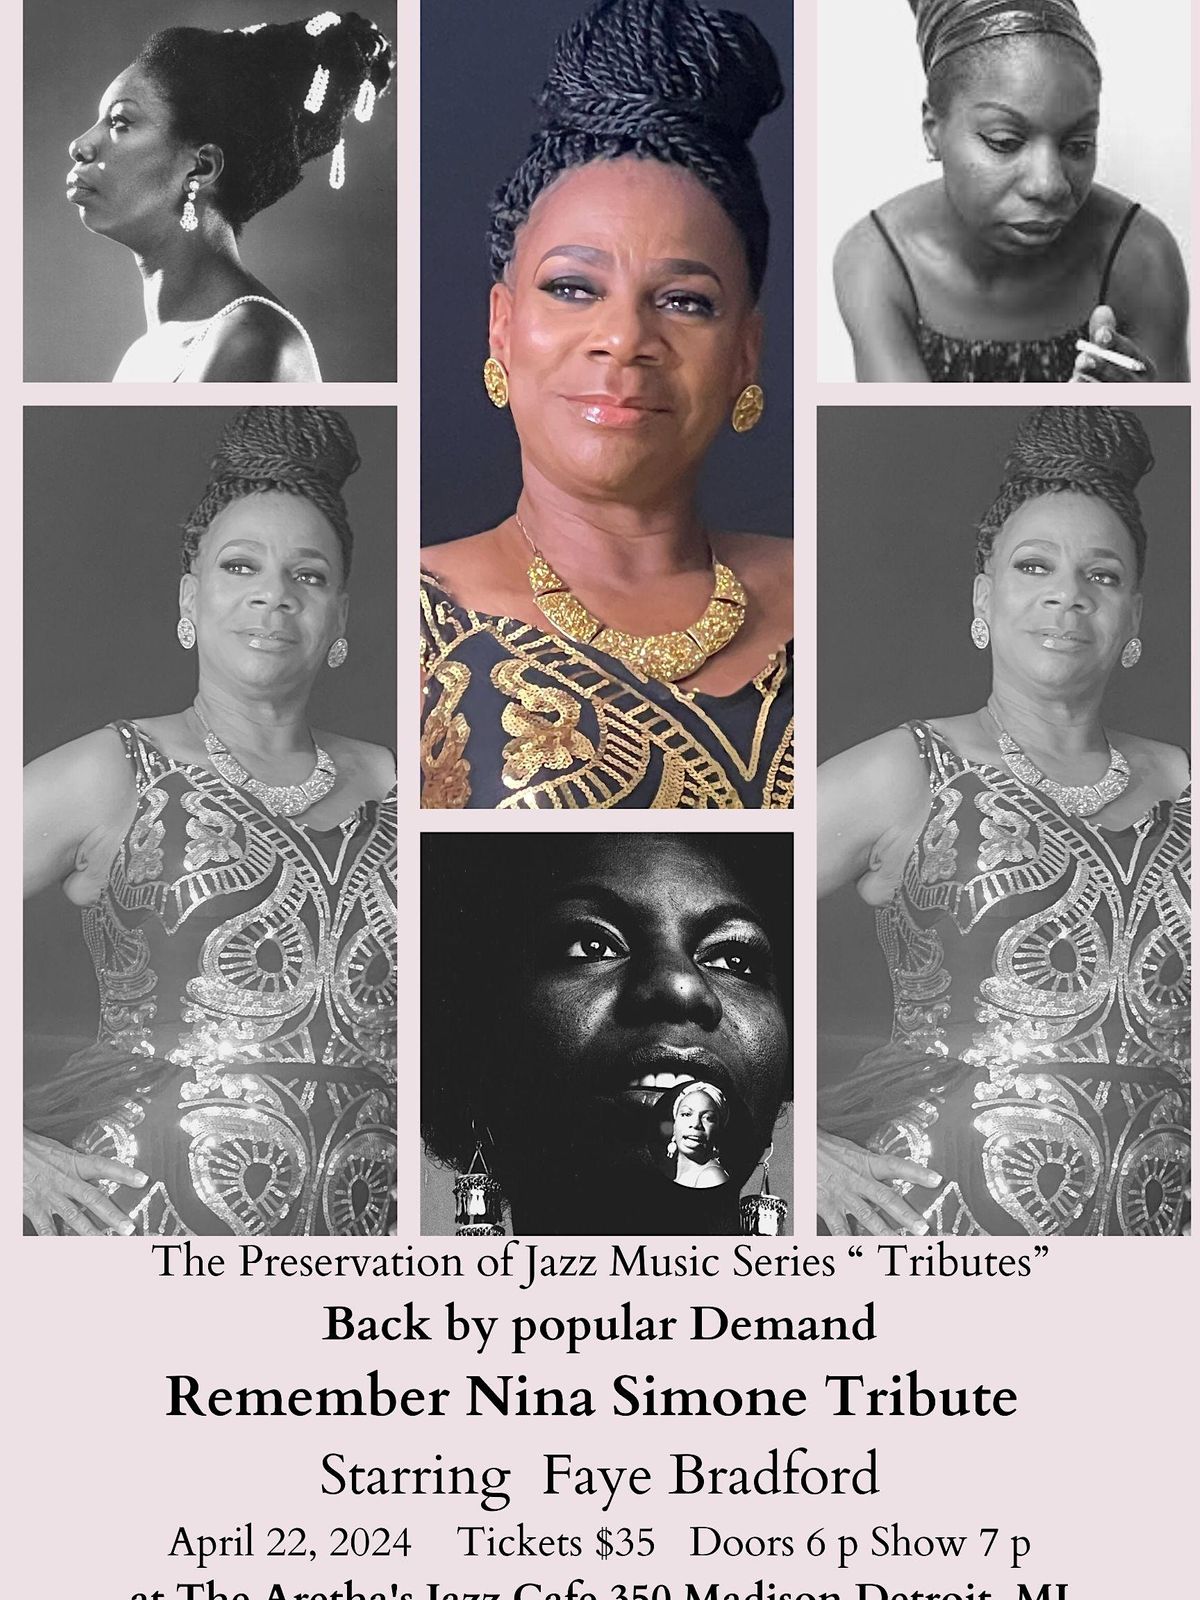 The Nina Simone Tribute ft. Faye Bradford at the Arethas Jazz Cafe